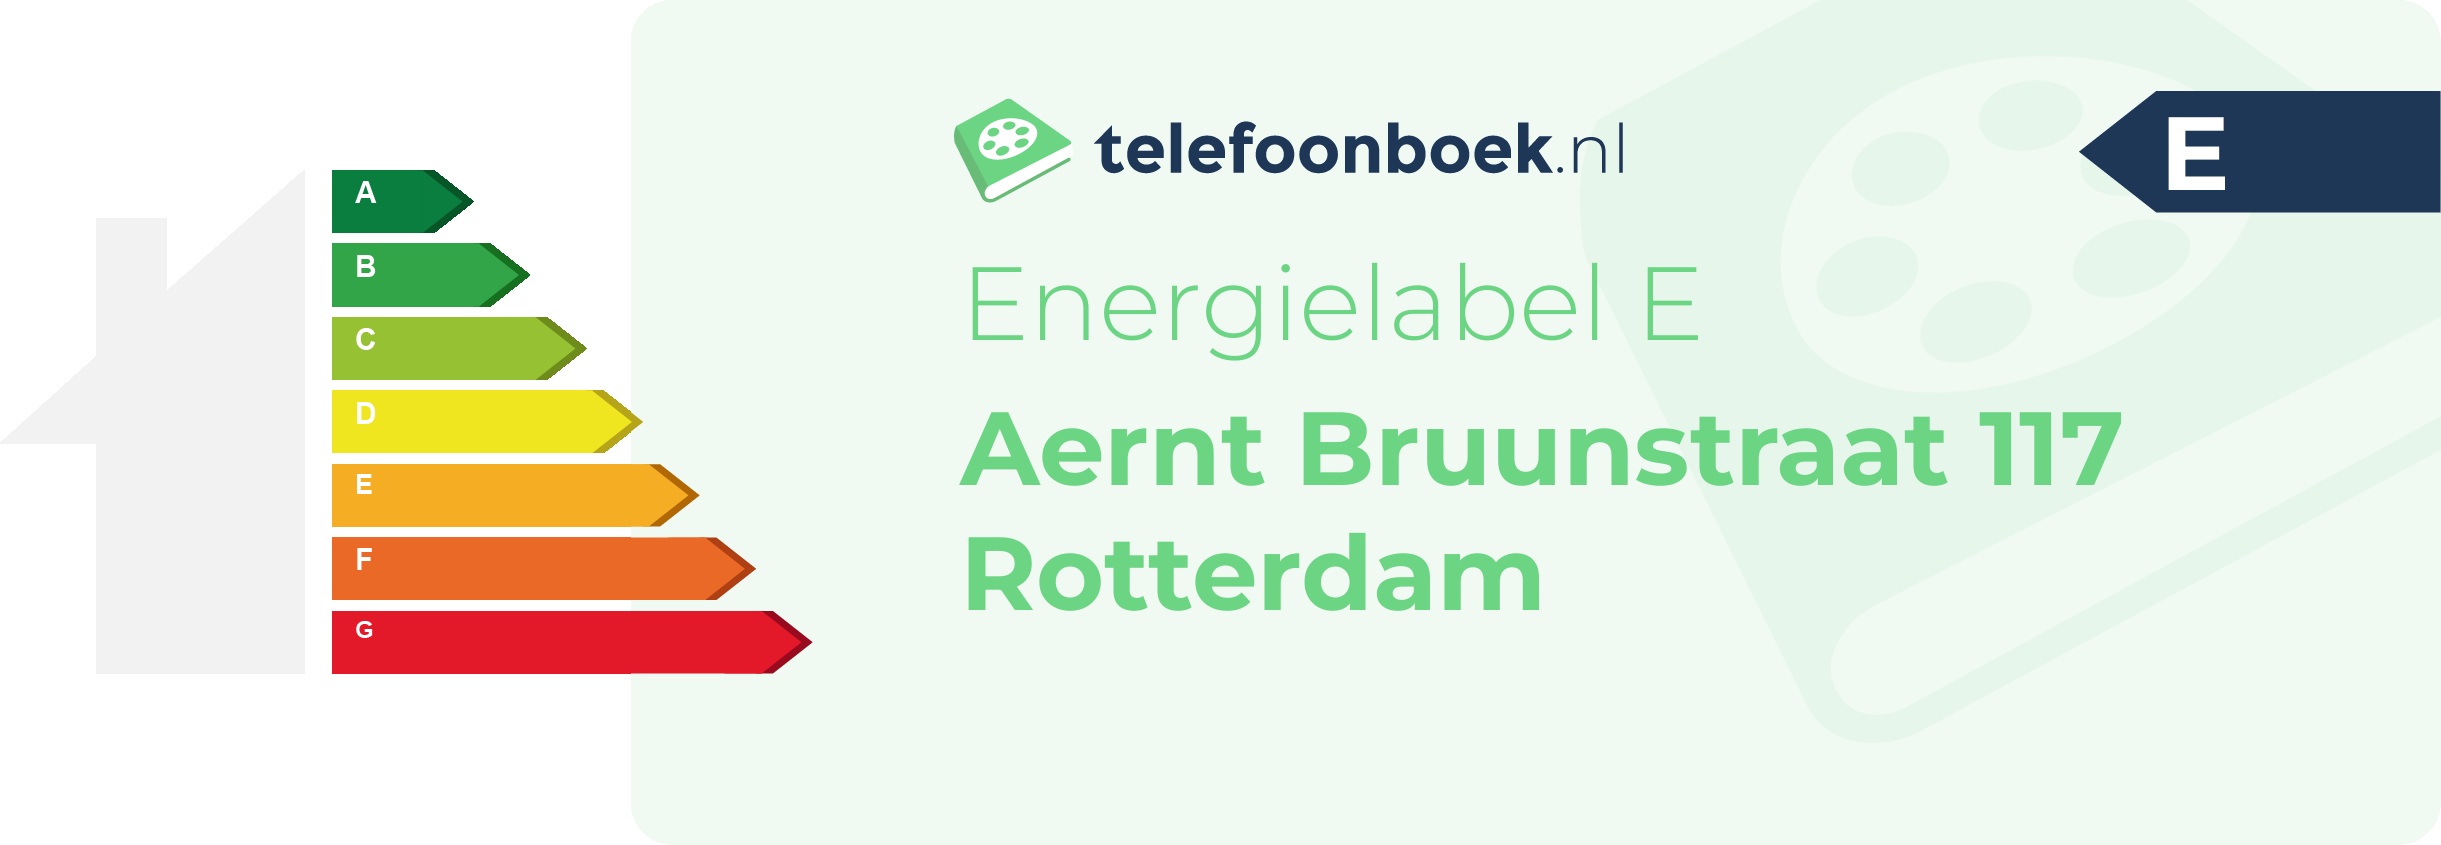 Energielabel Aernt Bruunstraat 117 Rotterdam